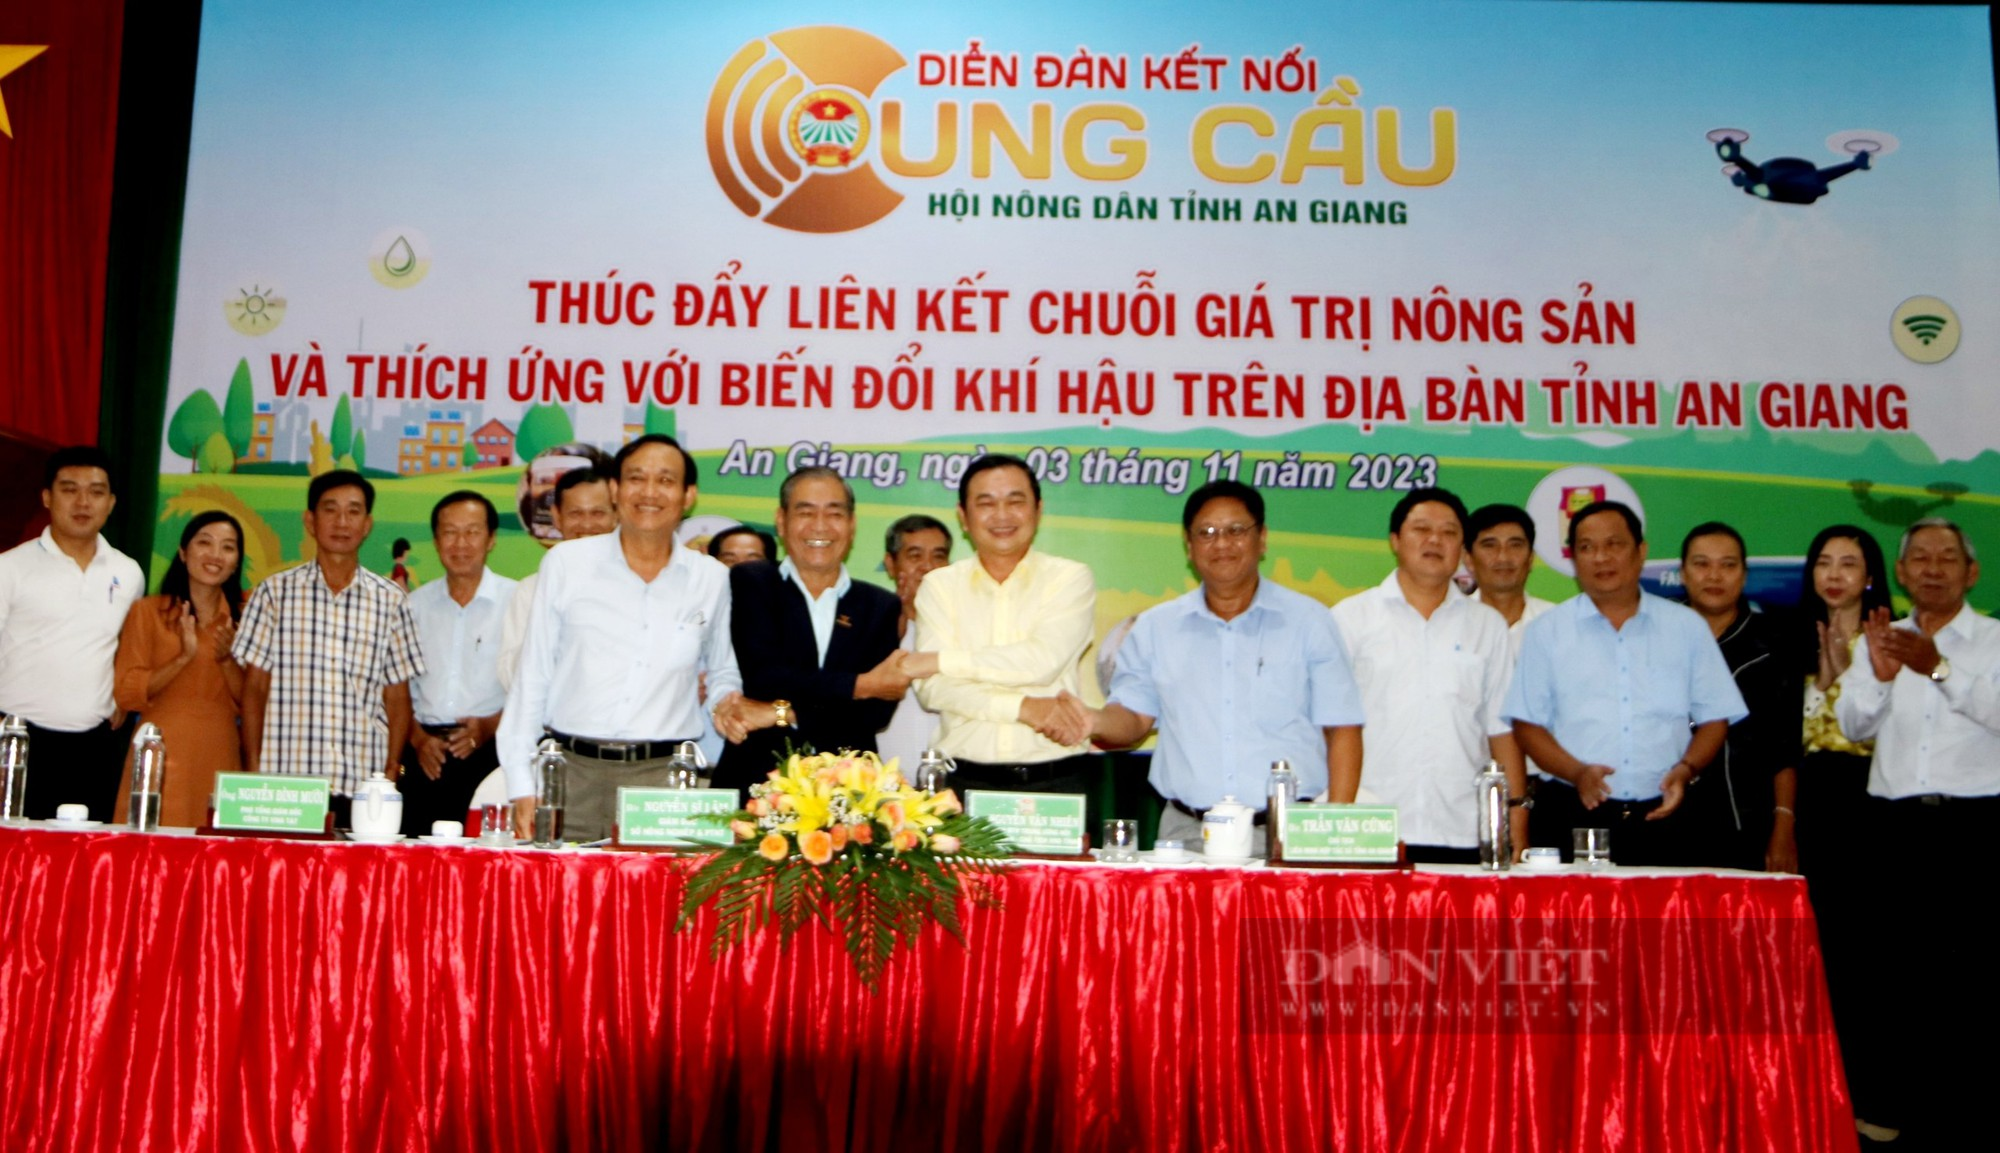 Hội Nông dân tỉnh An Giang mời chuyên gia bàn giải pháp thúc đẩy liên kết chuỗi giá trị nông sản - Ảnh 6.